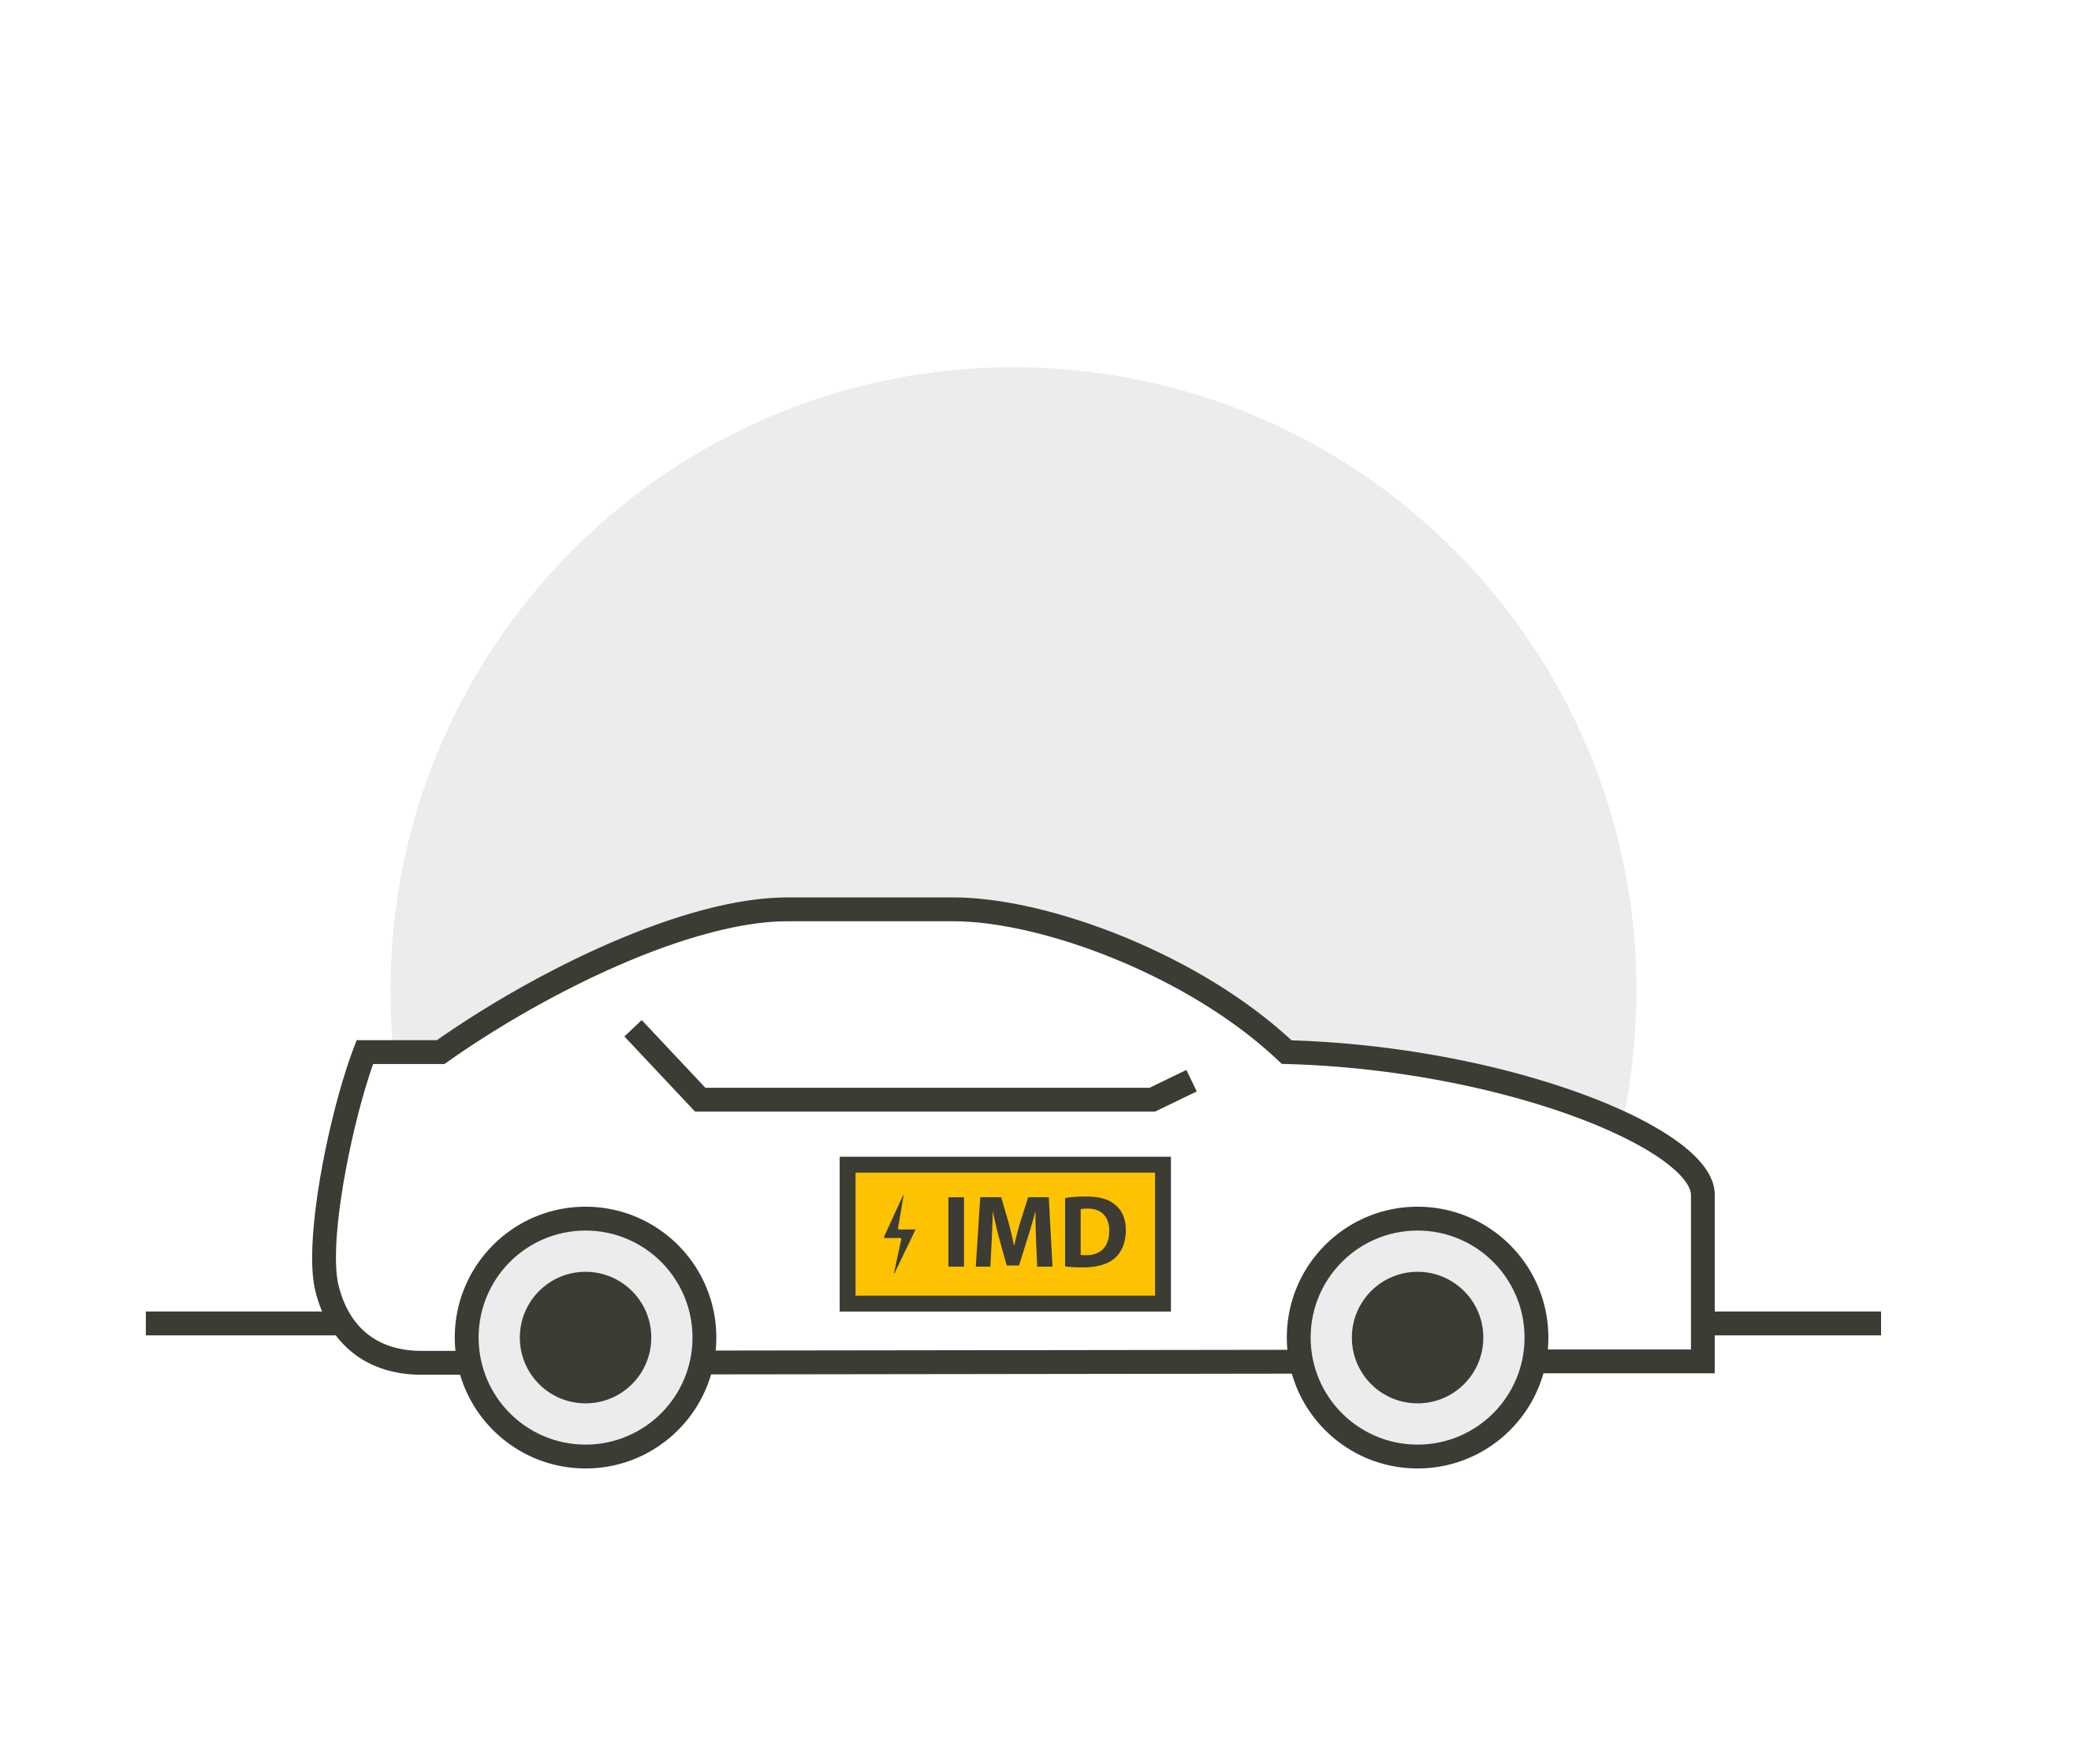 Ein Auto mit dem Schriftzug "IMD" darauf.